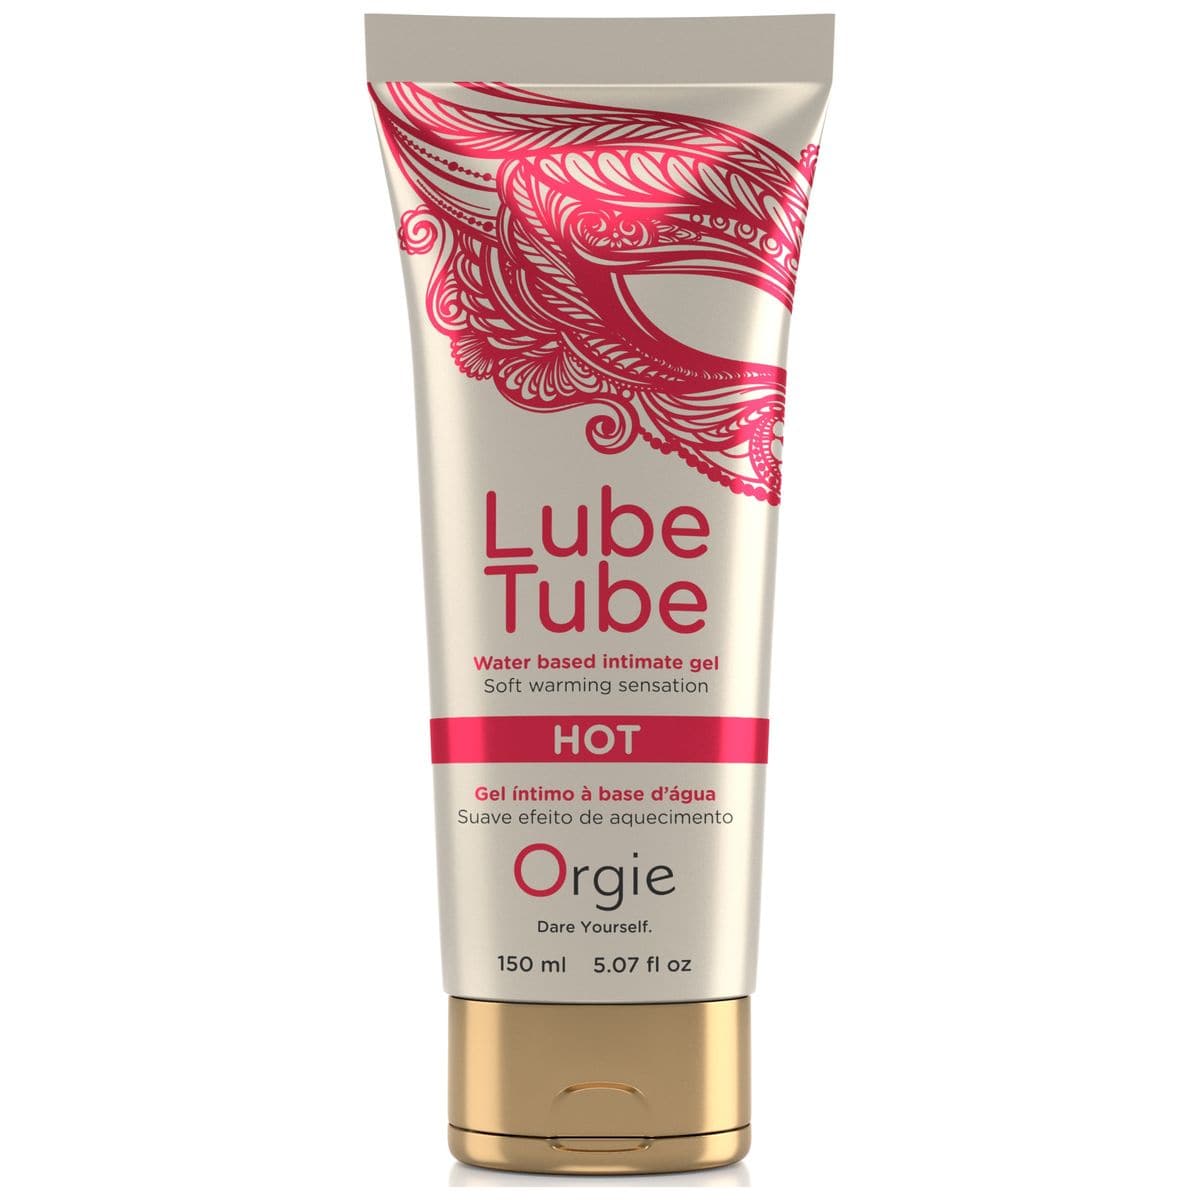 Lubrificante Lube Tube 150ml Hot/Quente - Sensação de Aquecimento para Experiências Sensuais